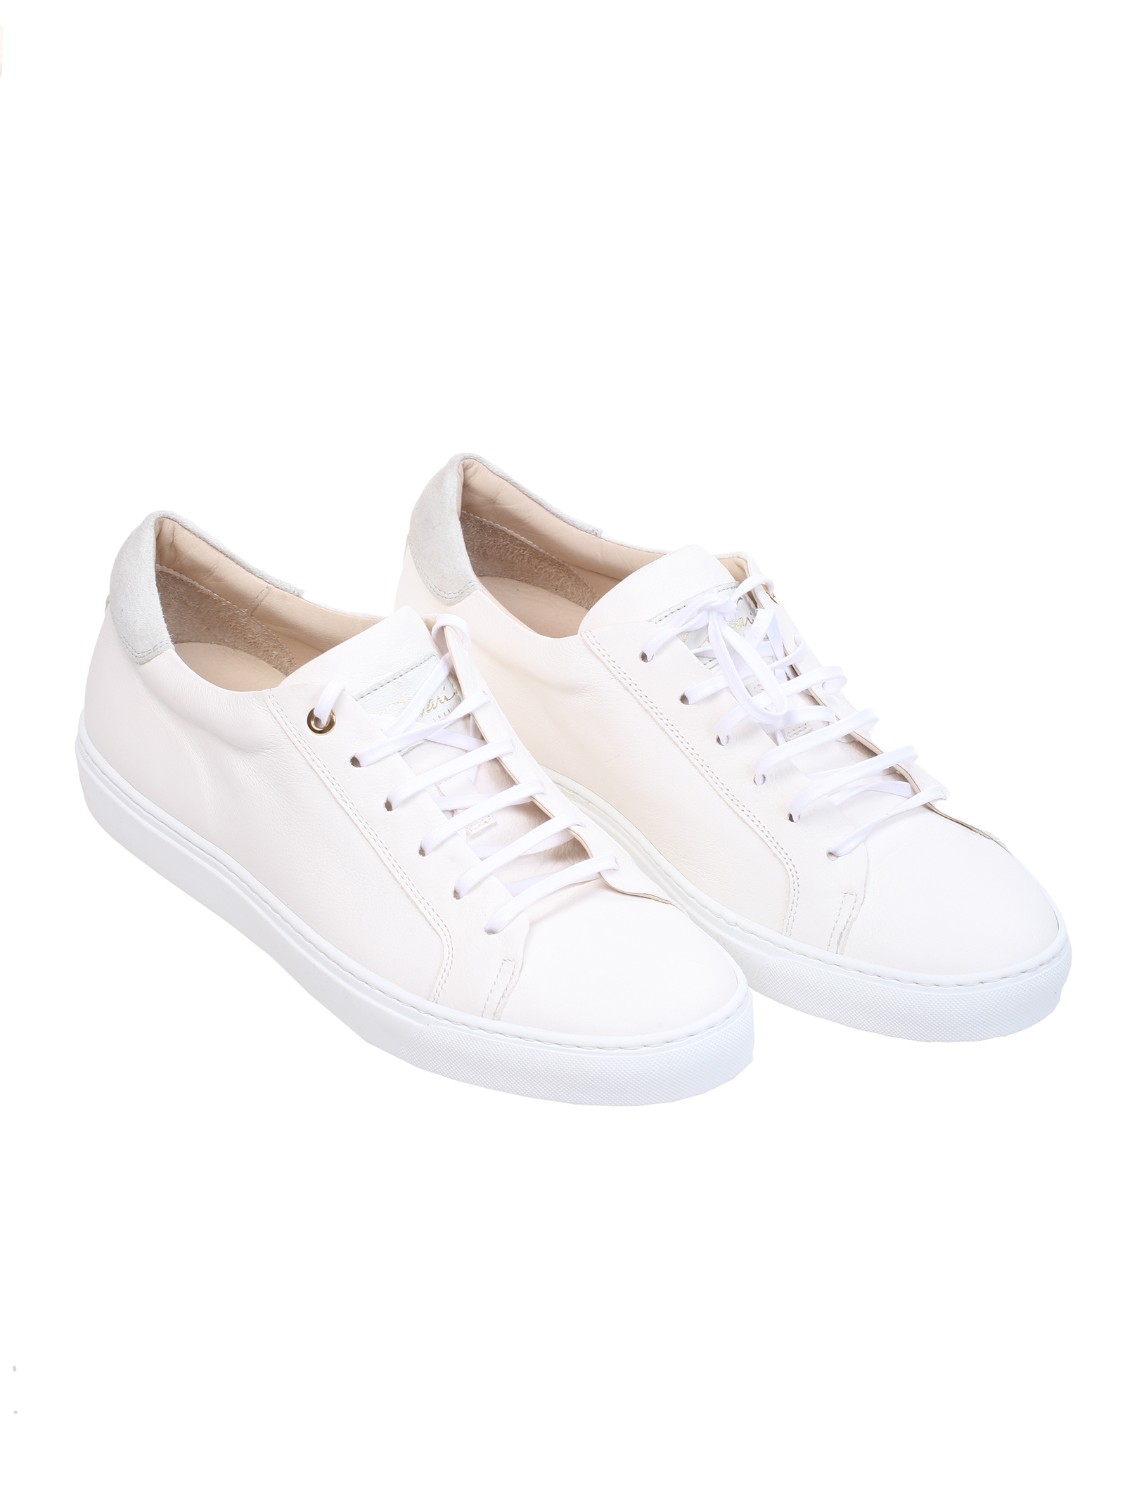 shop CORVARI Saldi Scarpe: Corvari sneakers in pelle bianca.
Chiusura con lacci.
Dettagli in camoscio.
Made in Italy.
Composizione: 100% pelle.. 9650 TODI-HONEY number 4379349